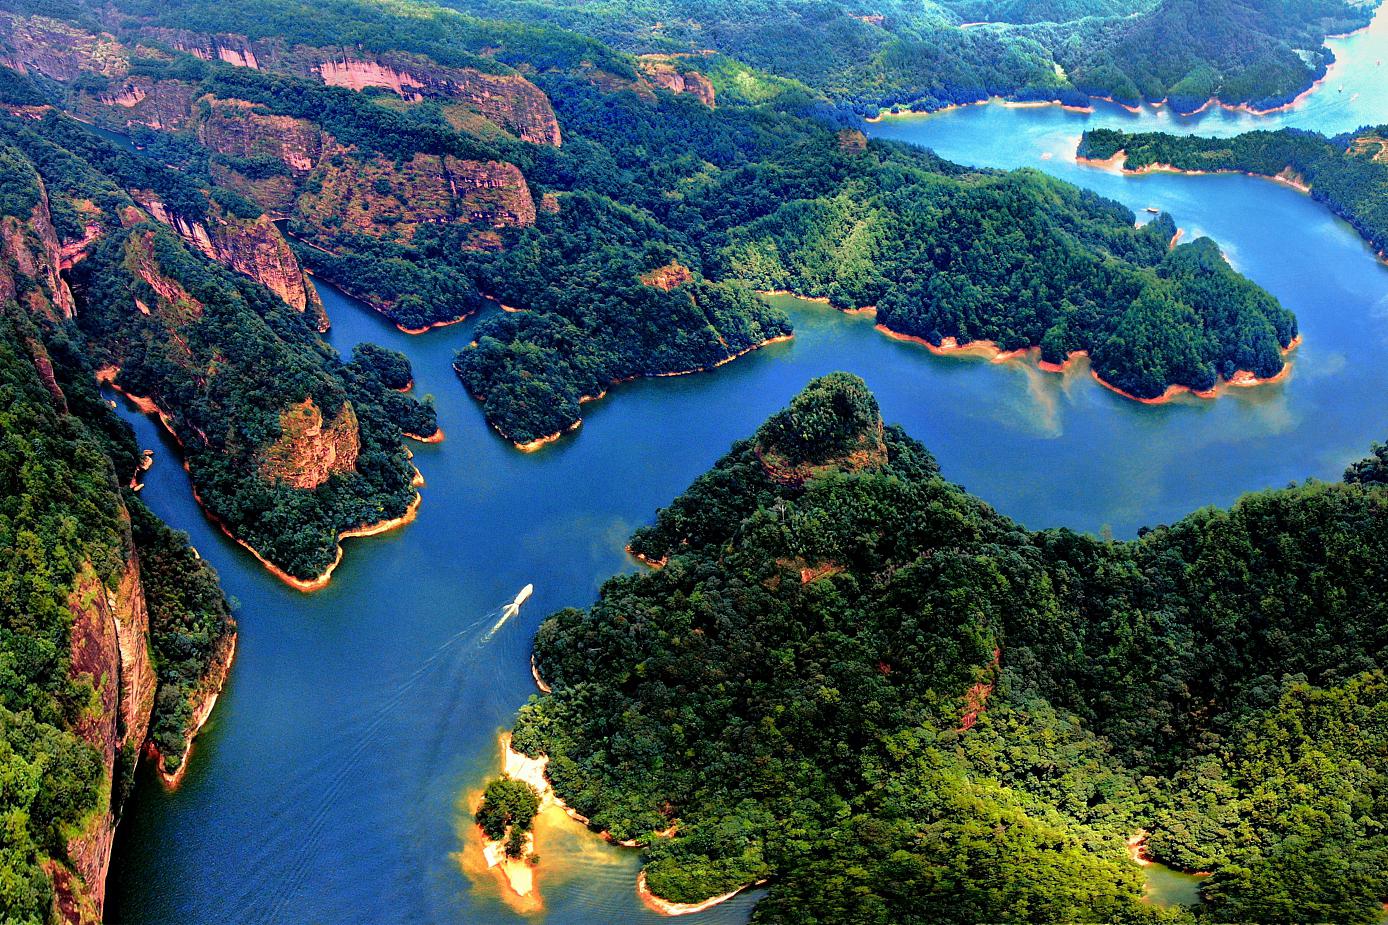 大金湖,福建泰宁的旅游胜地 大金湖,位于中国福建省三明市泰宁县,是一